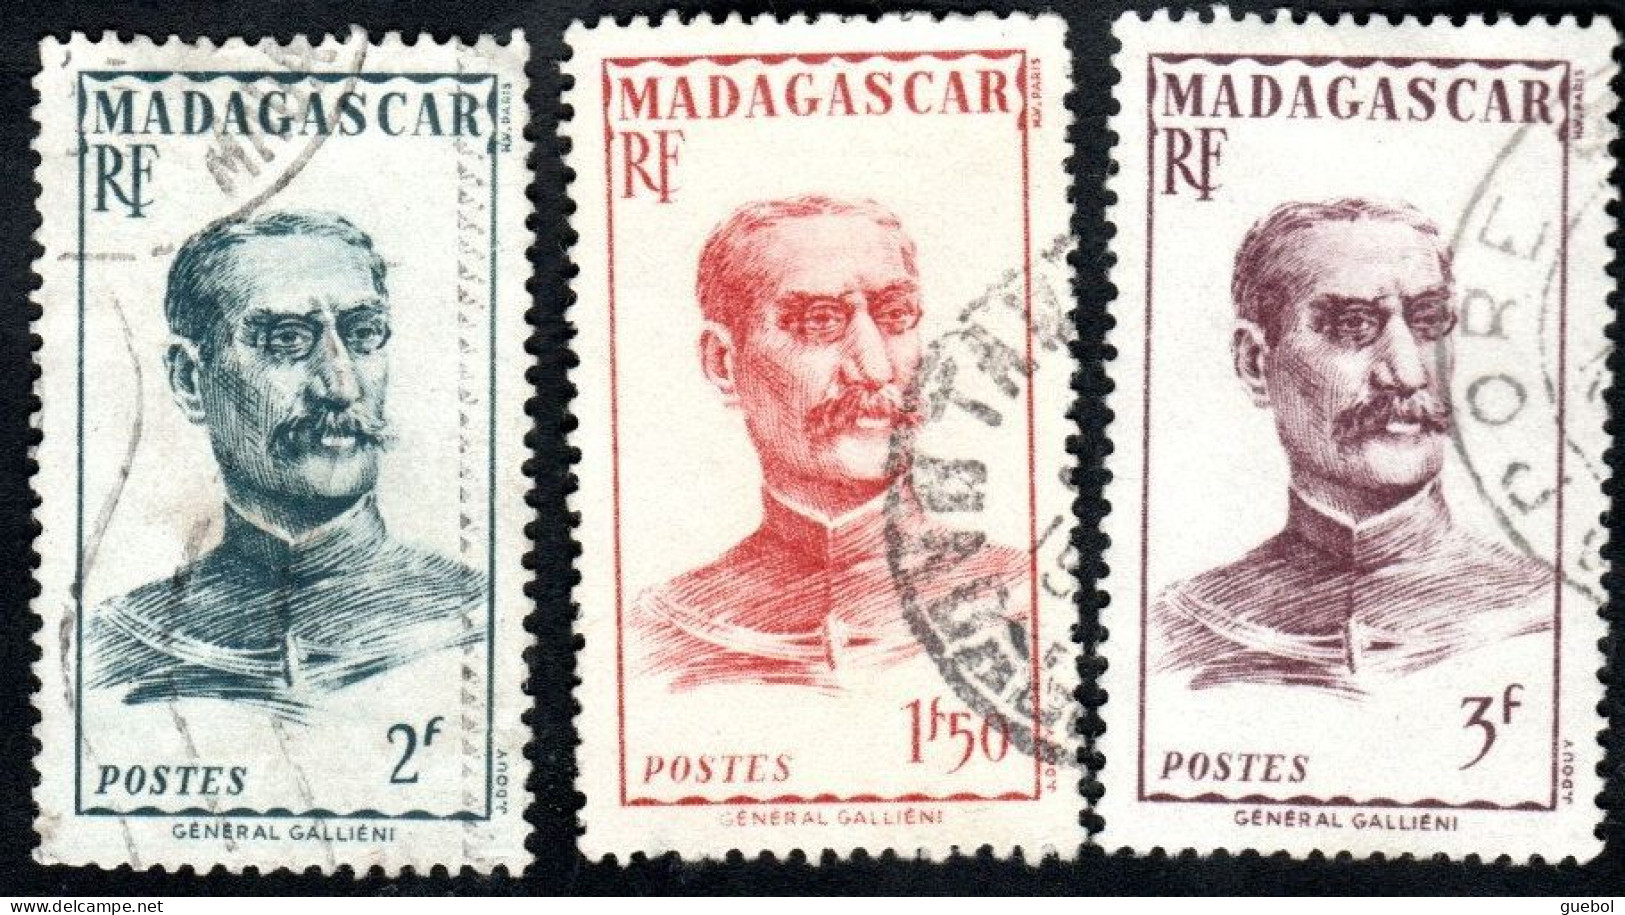 Madagascar Obl. N° 308 - 309 - 310 - Militaire - Général Galliéni - Oblitérés